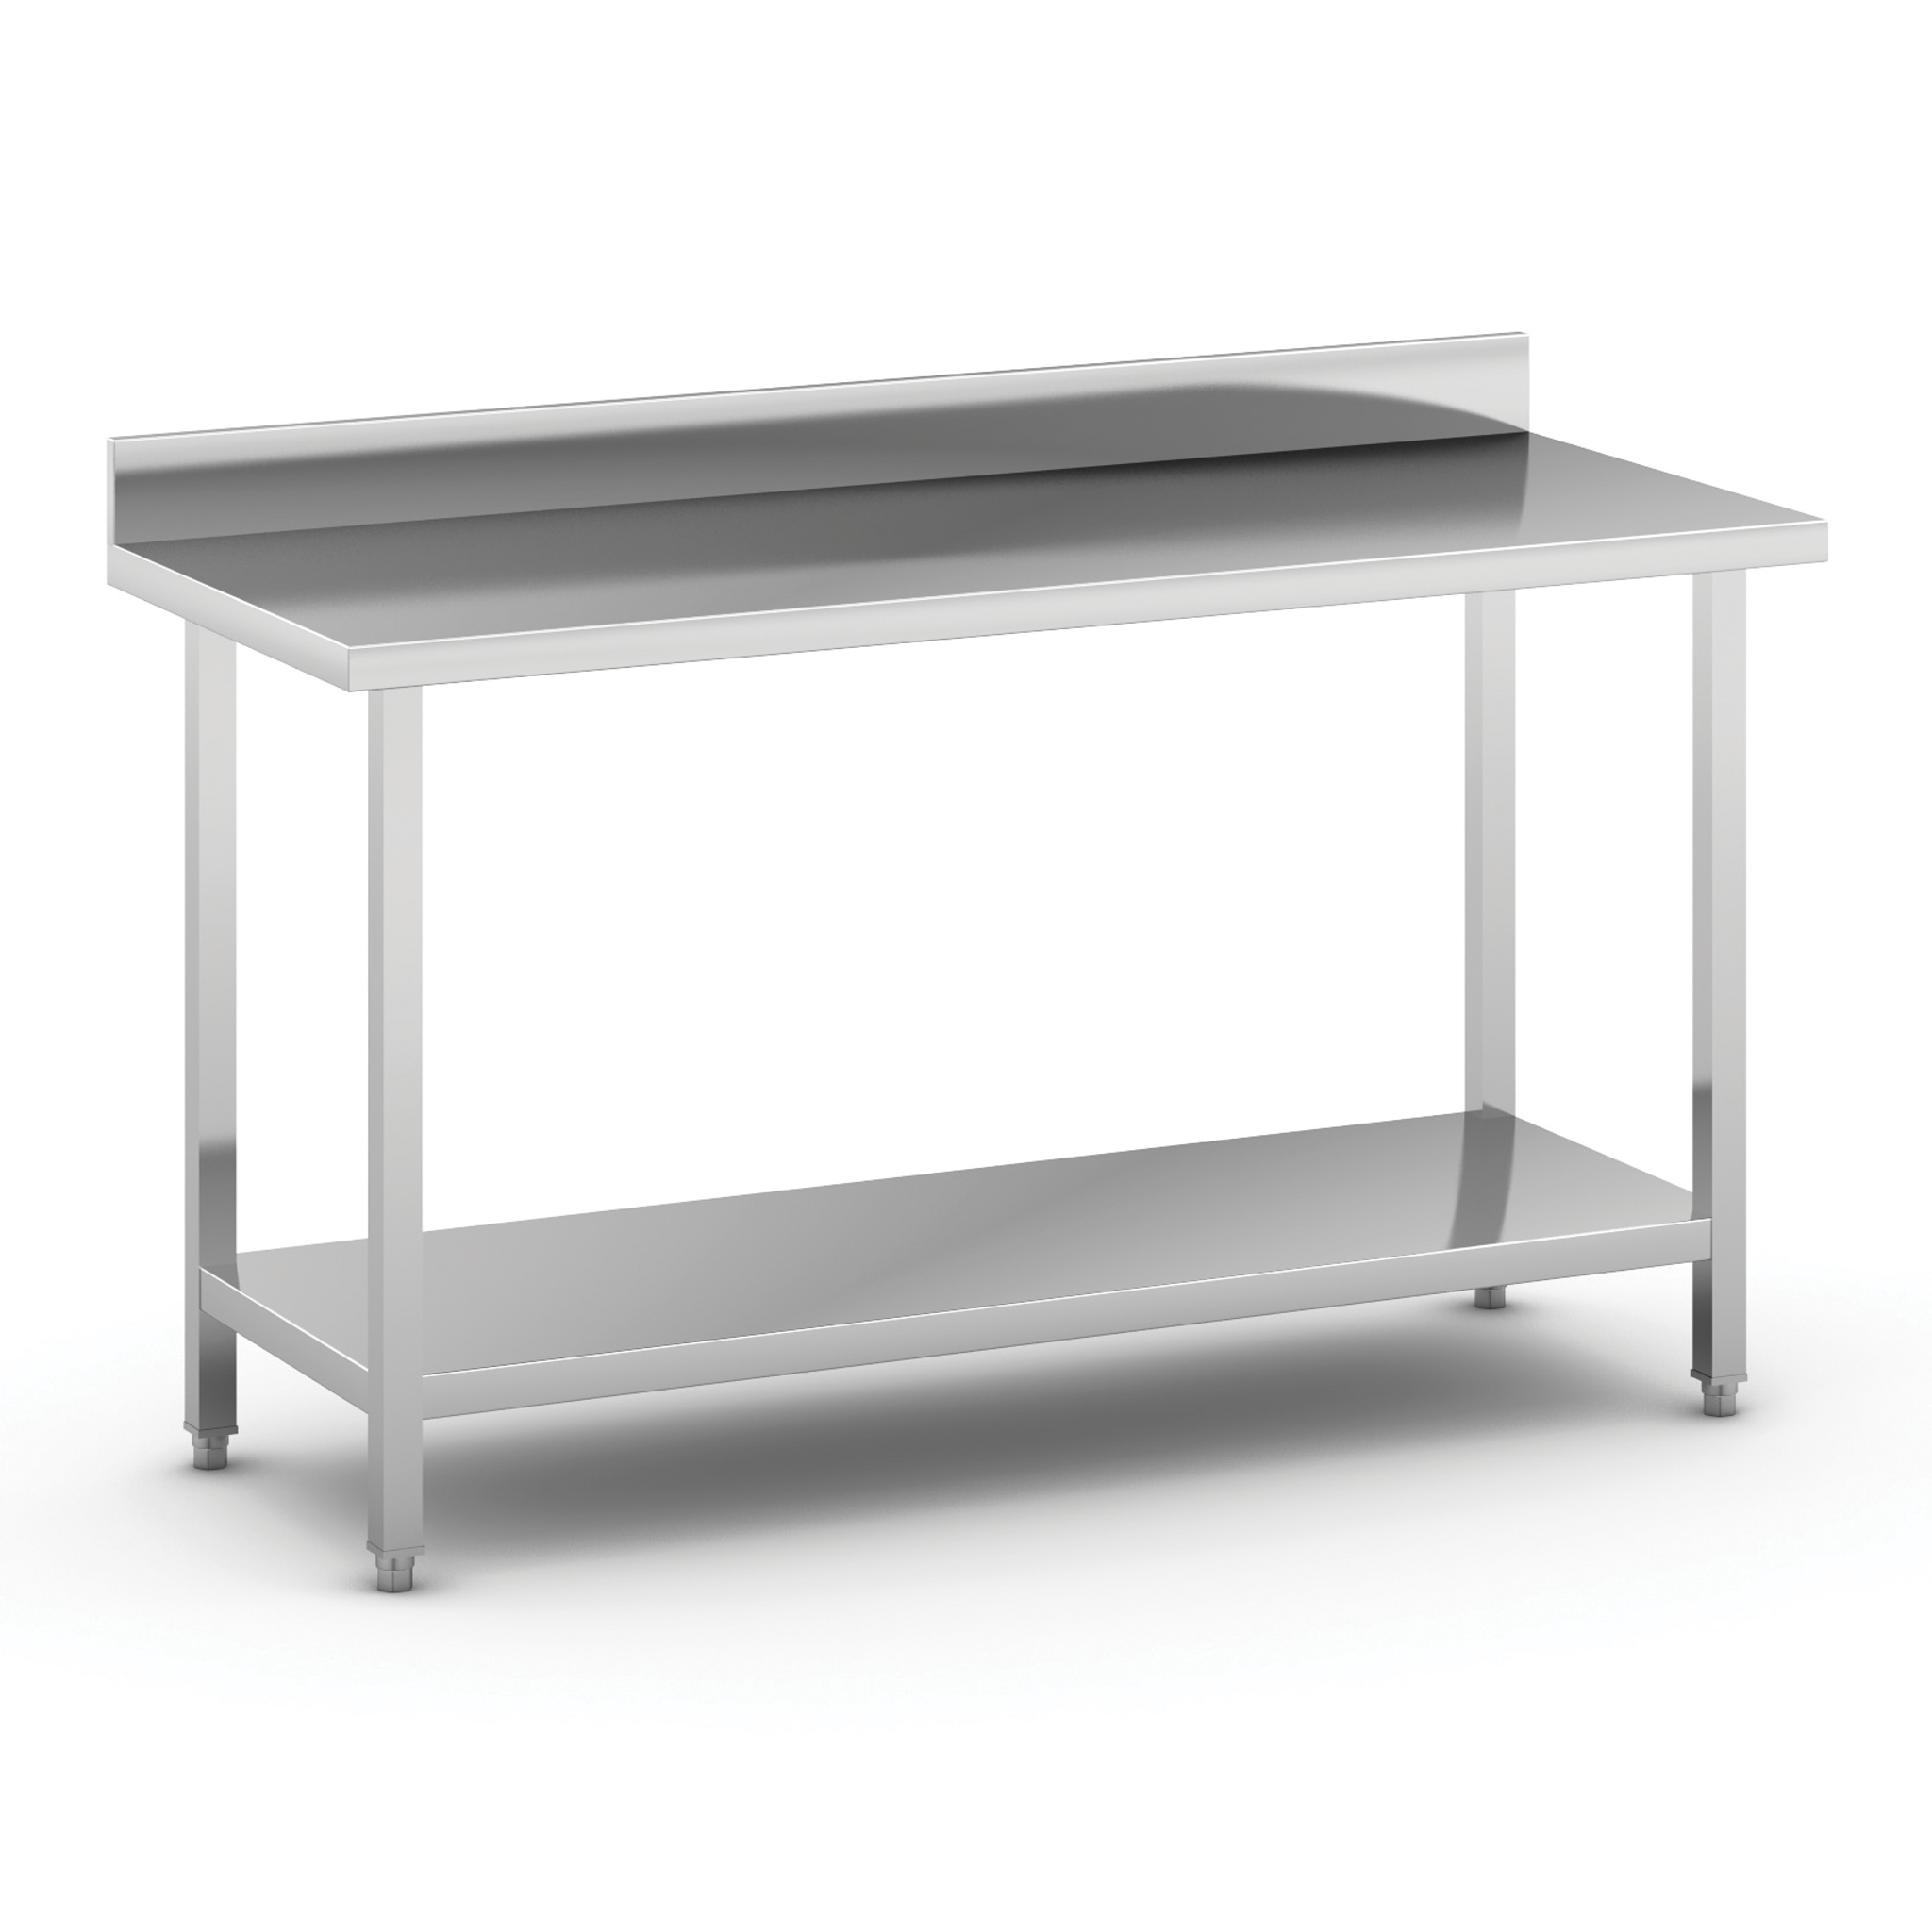 Nerezový pracovný stôl s policou a ohrádkou, 1500 x 600 x 850 mm